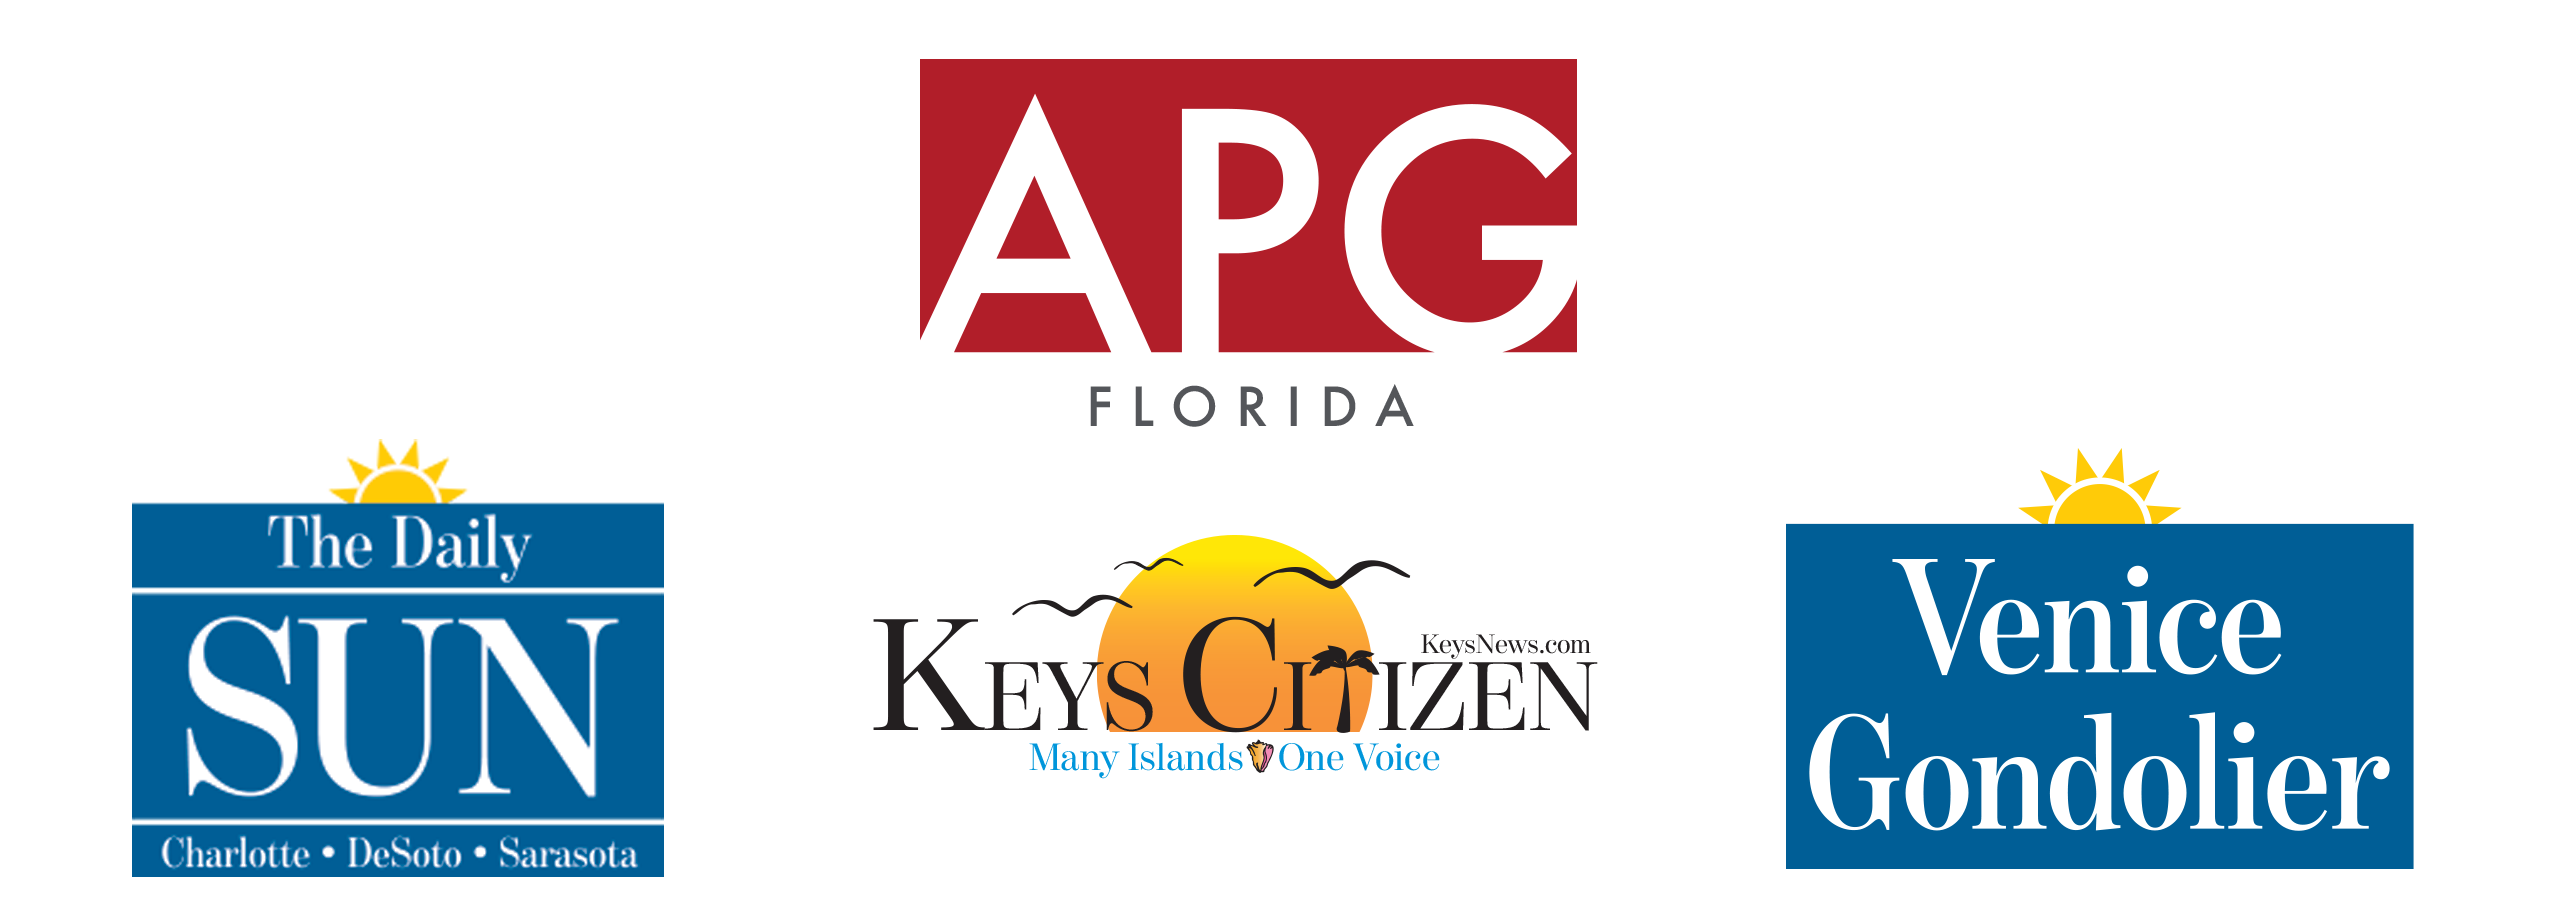 APG Florida Logo